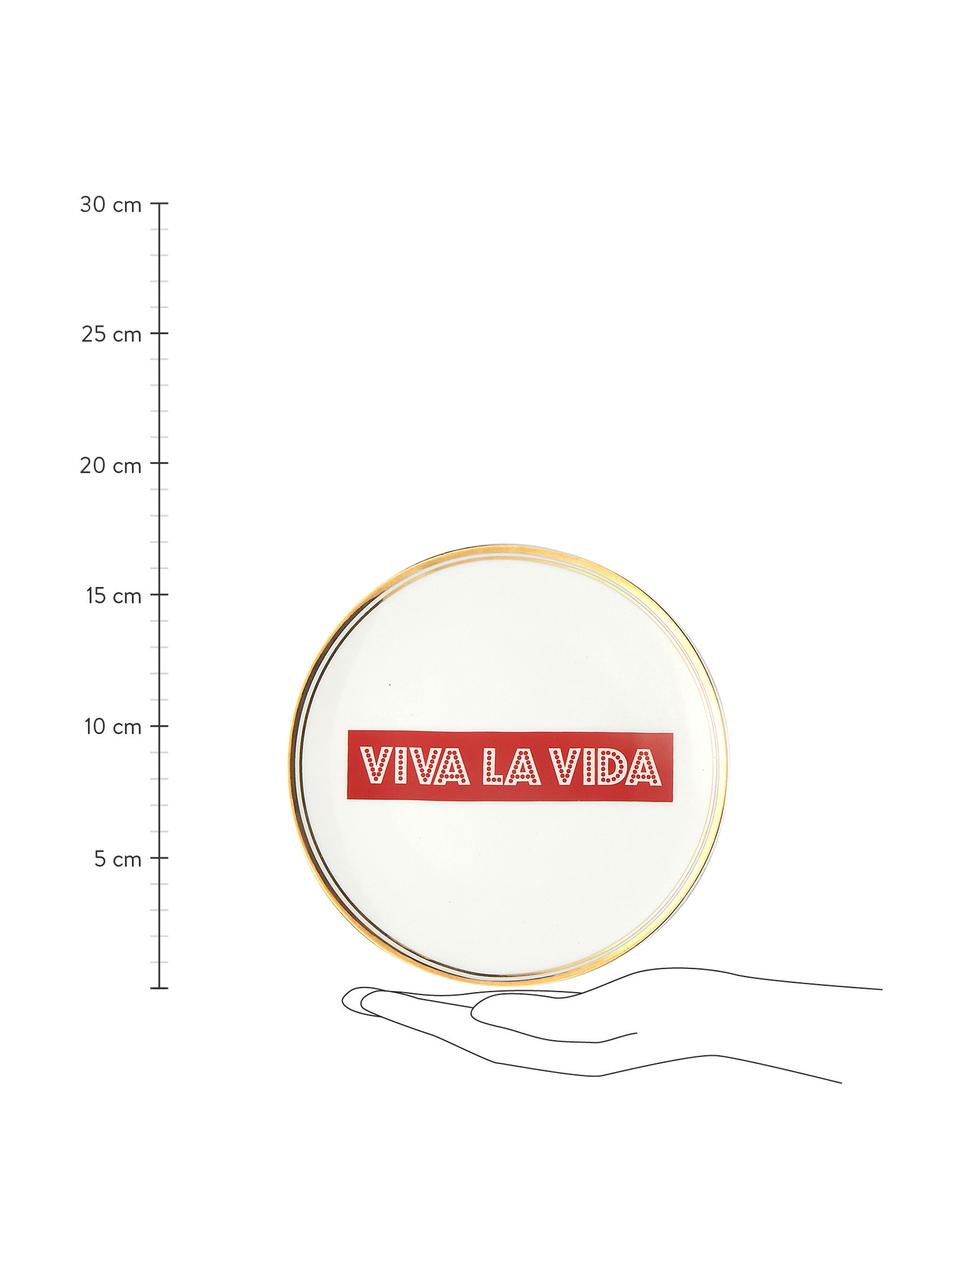 Assiette à dessert en porcelaine avec bord doré Viva La Vida, Porcelaine, Viva La Vida, Ø 17 cm